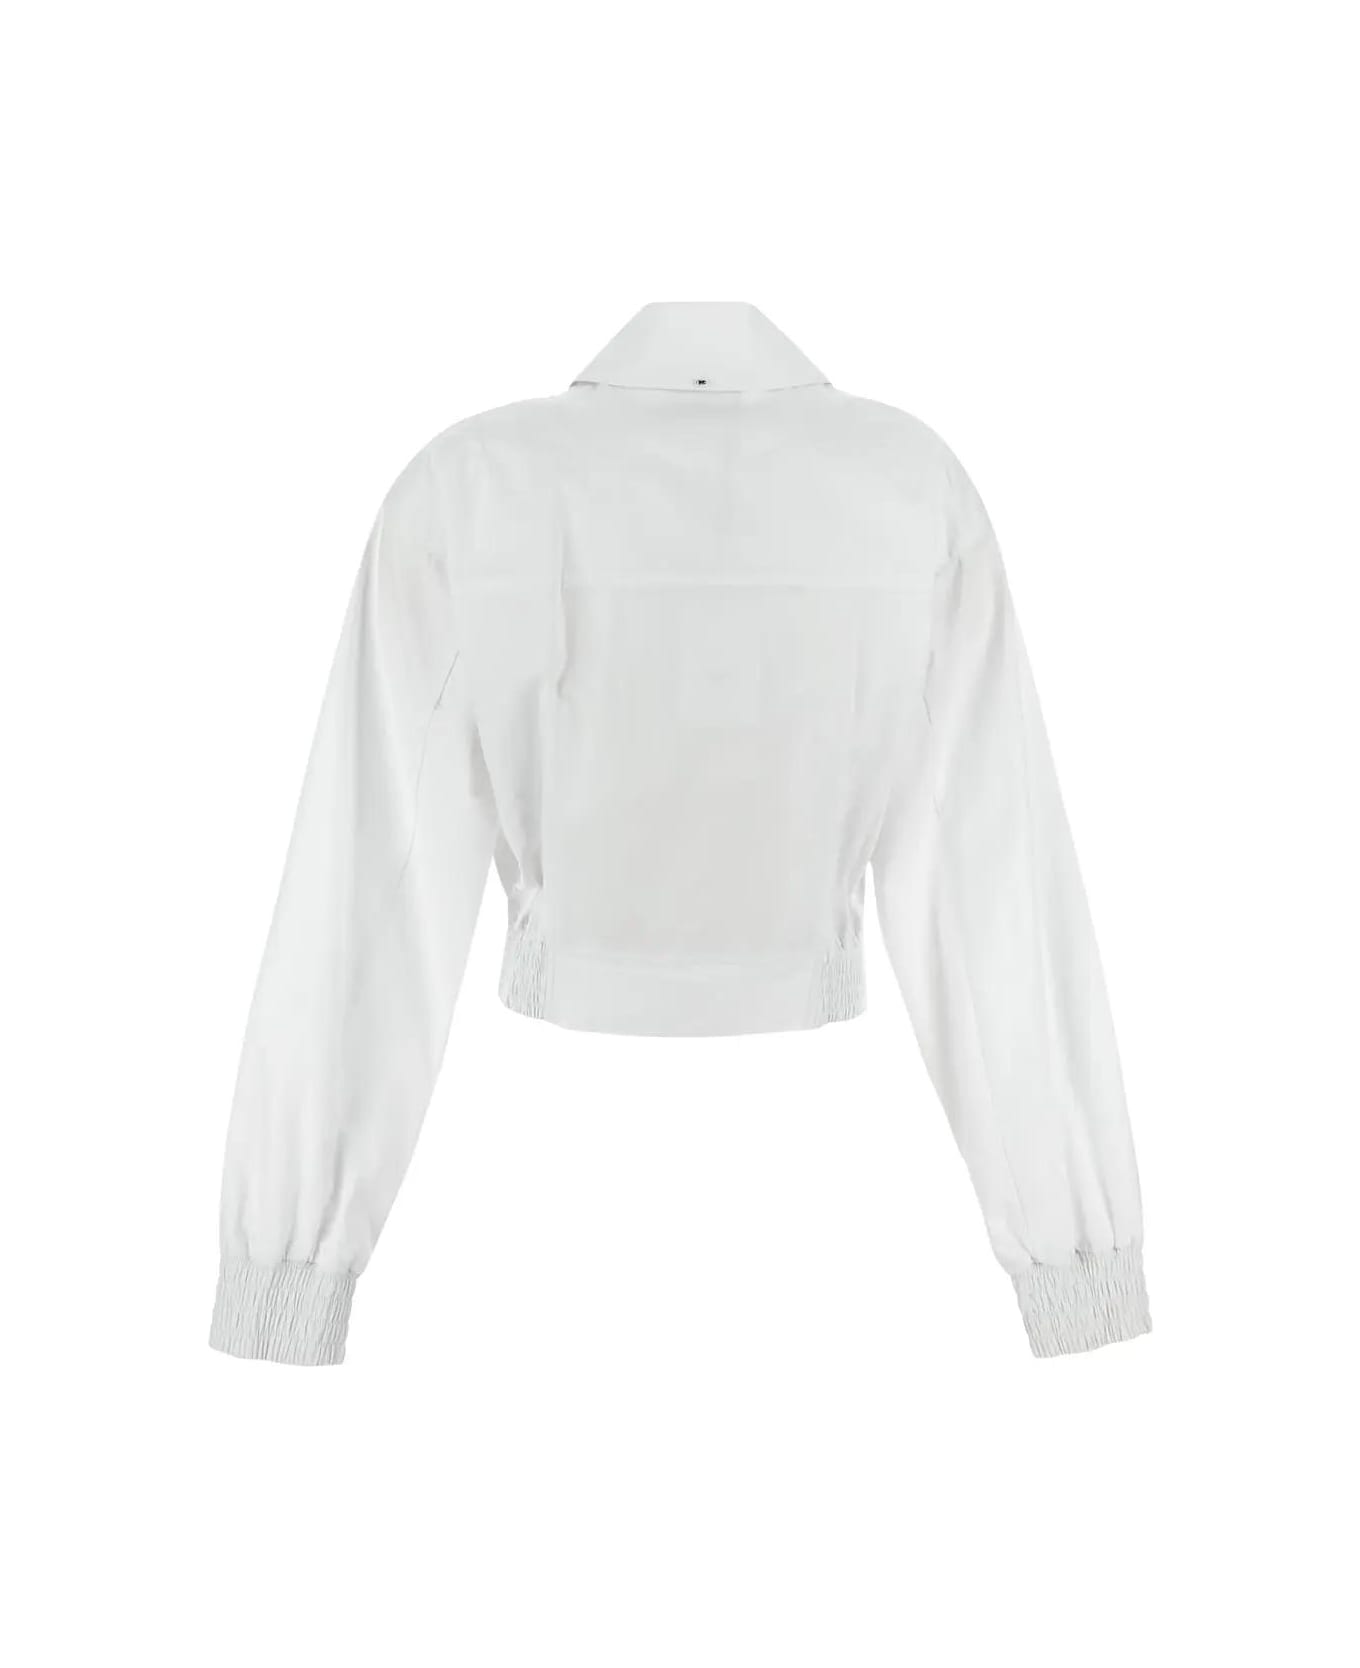 SportMax White Gala Shirt - White